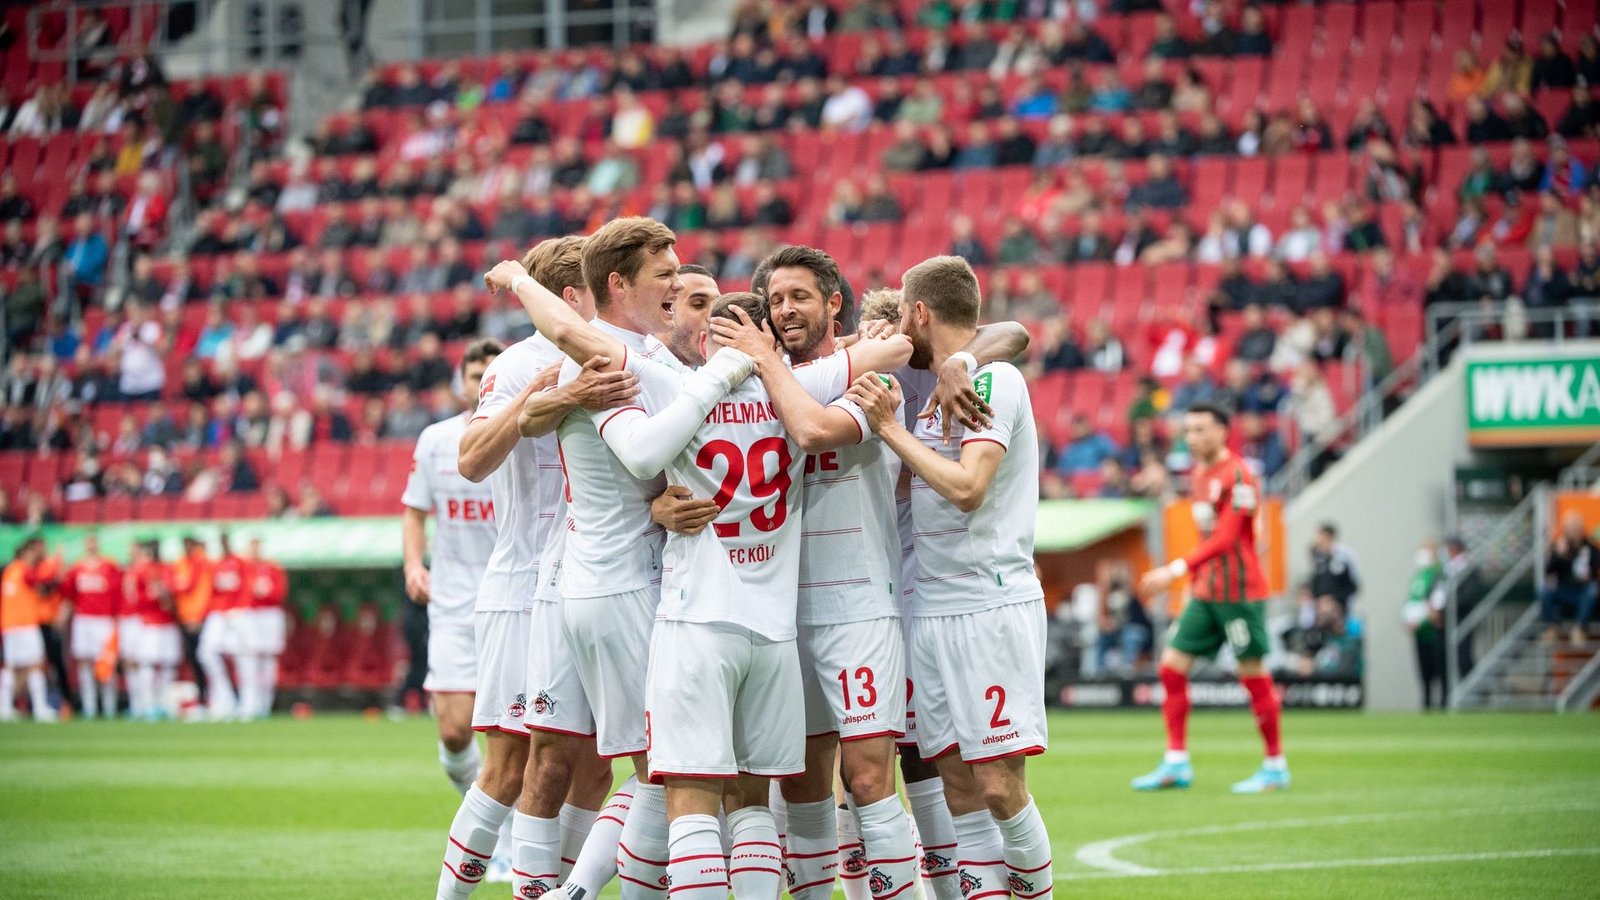 Die Spieler von Köln jubeln über Mark Uths Treffer gegen den FC Augsburg.Foto: Matthias Balk/dpa